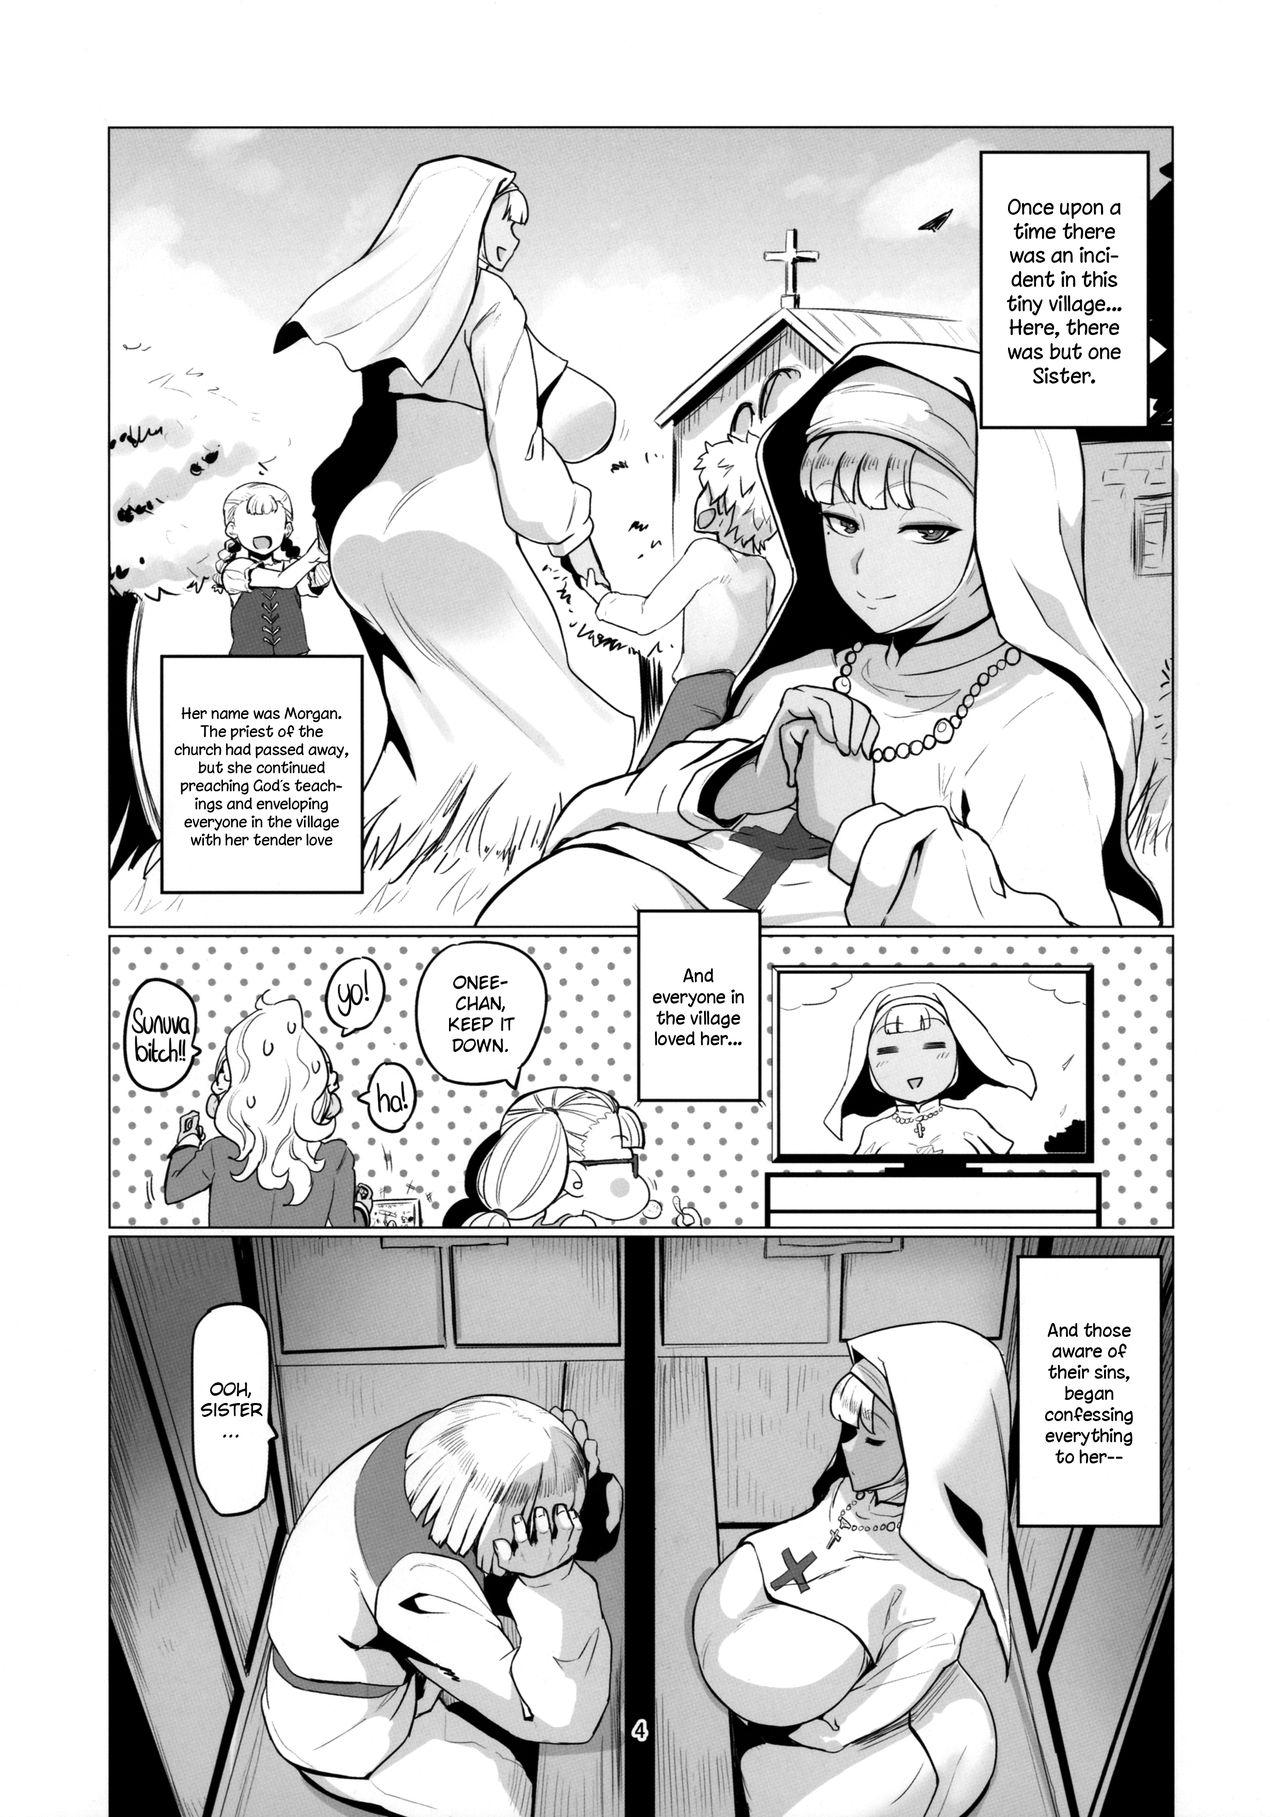 Viet Galko Ah!? - Oshiete galko-chan Fantasy Massage - Page 3